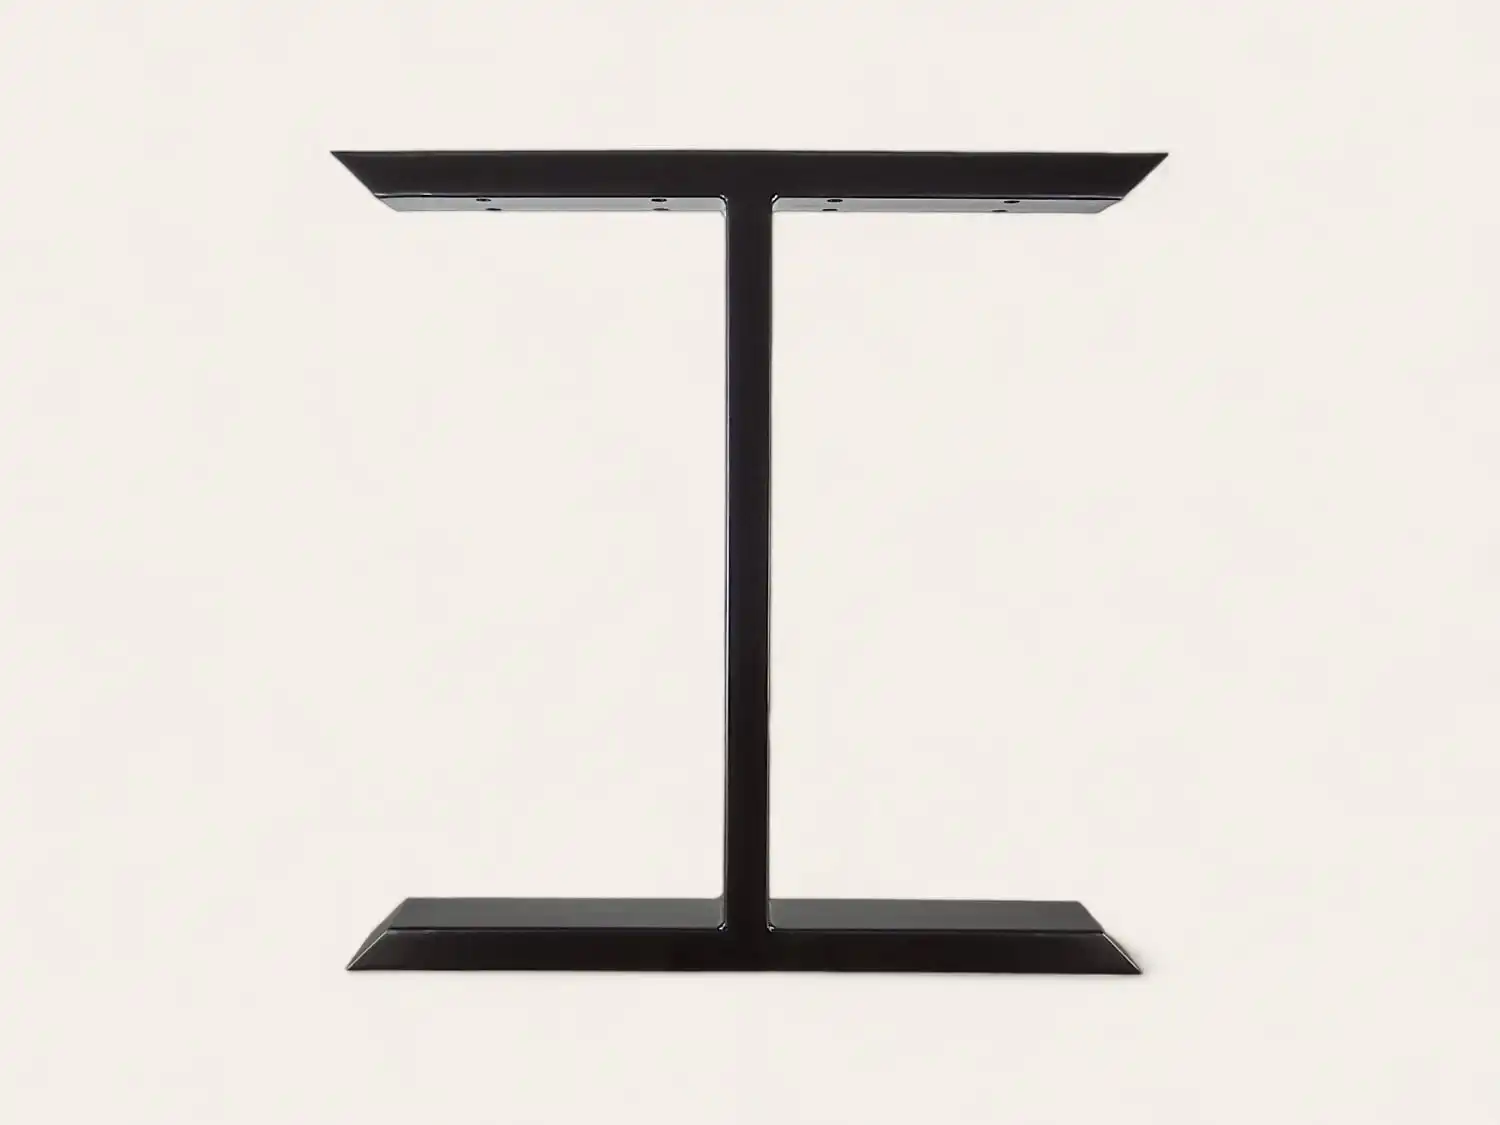 Pied de table moderne en forme de T noir sur fond blanc.